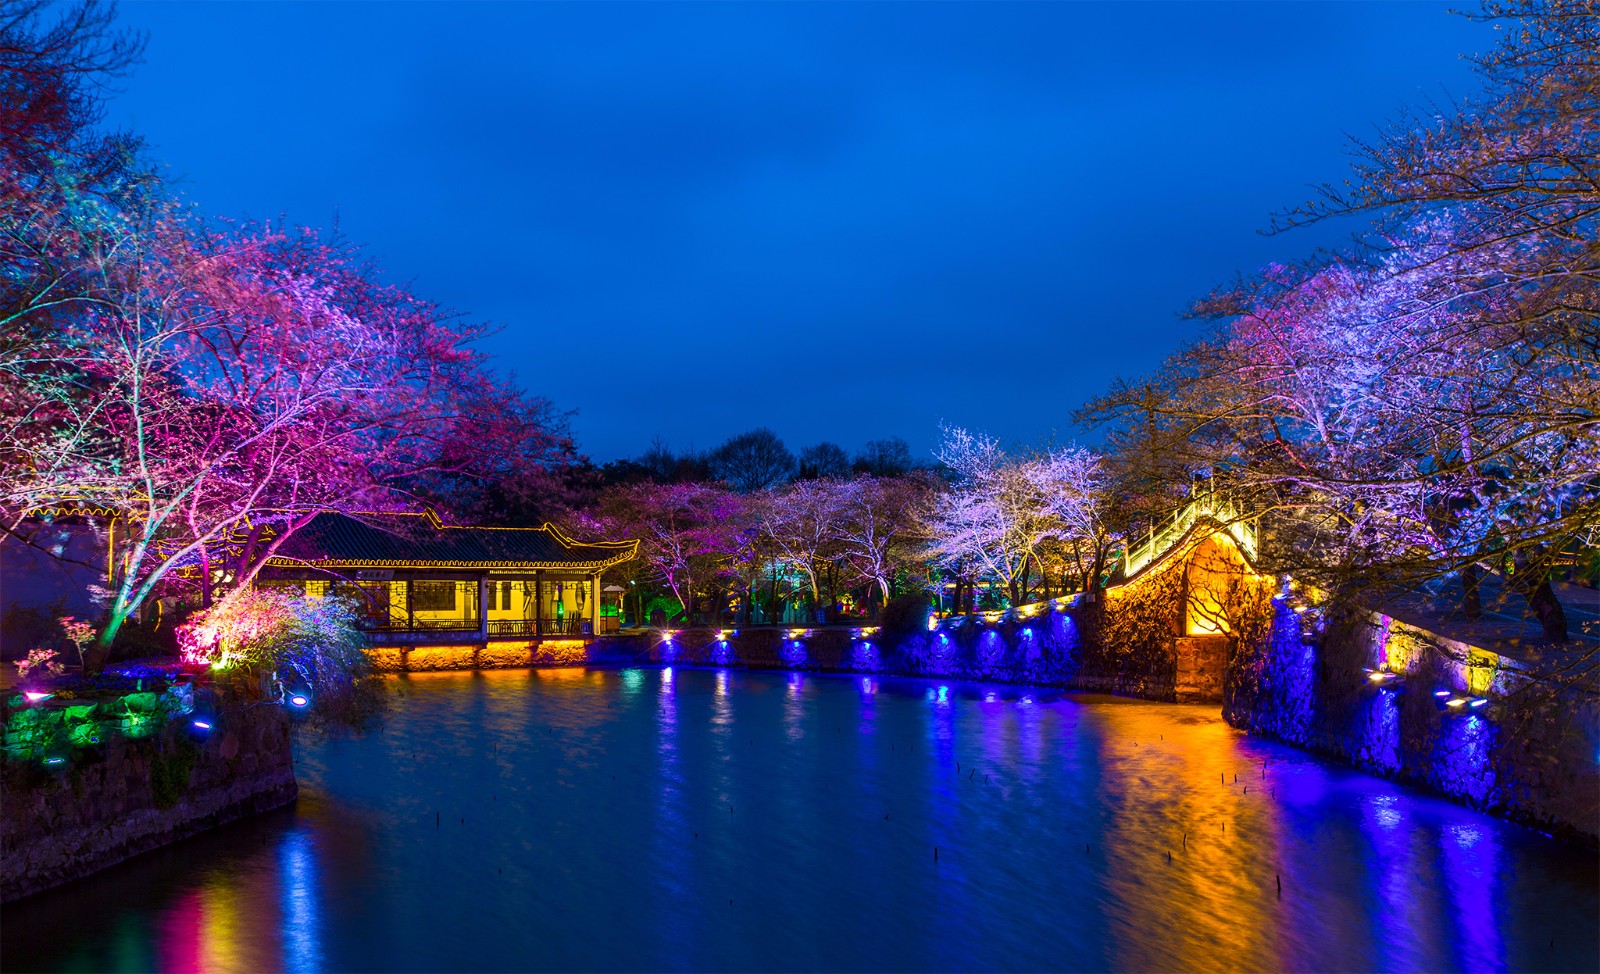 无锡太湖鼋头渚夜赏樱花,昨晚开始试灯